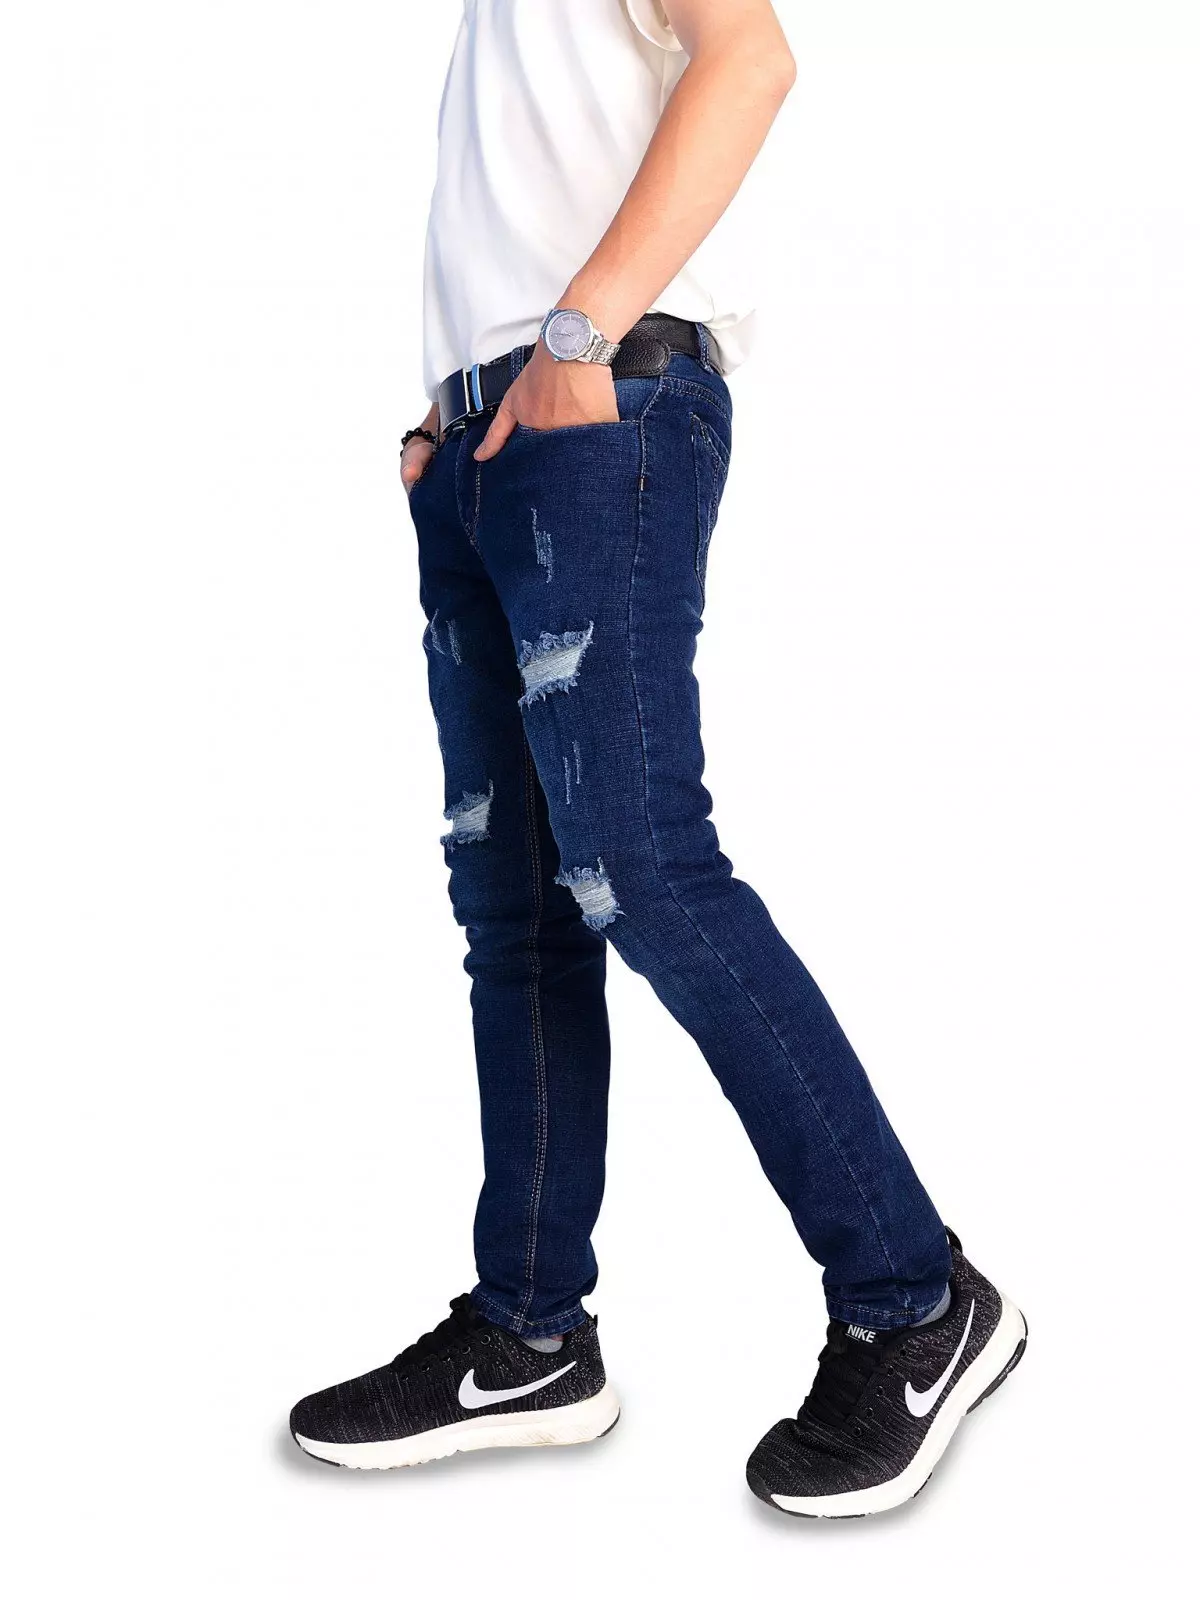 Phong cách quần jeans rách gối